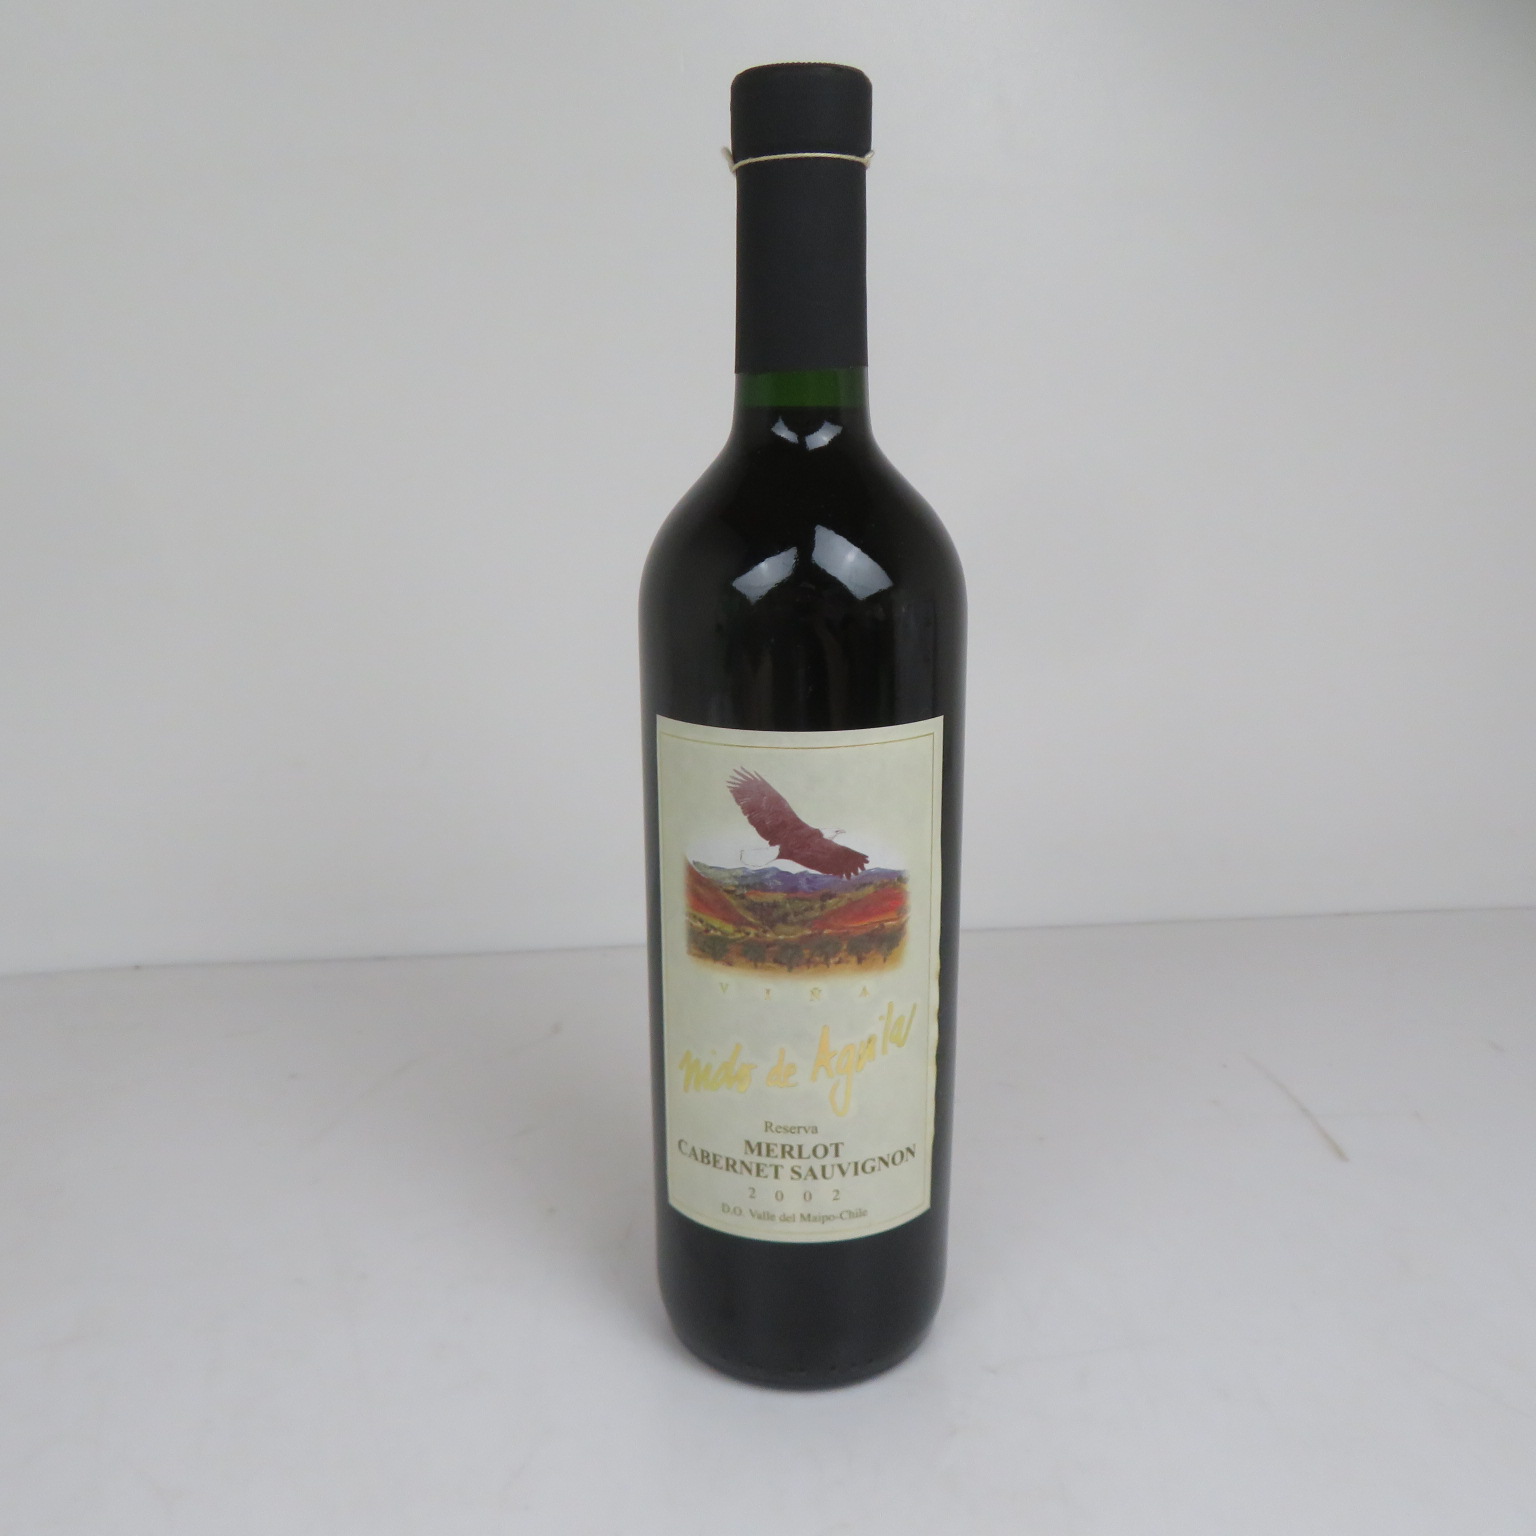 Nido de Aguila MERLOT CABERNET SAUVIGNON 2002 赤ワイン